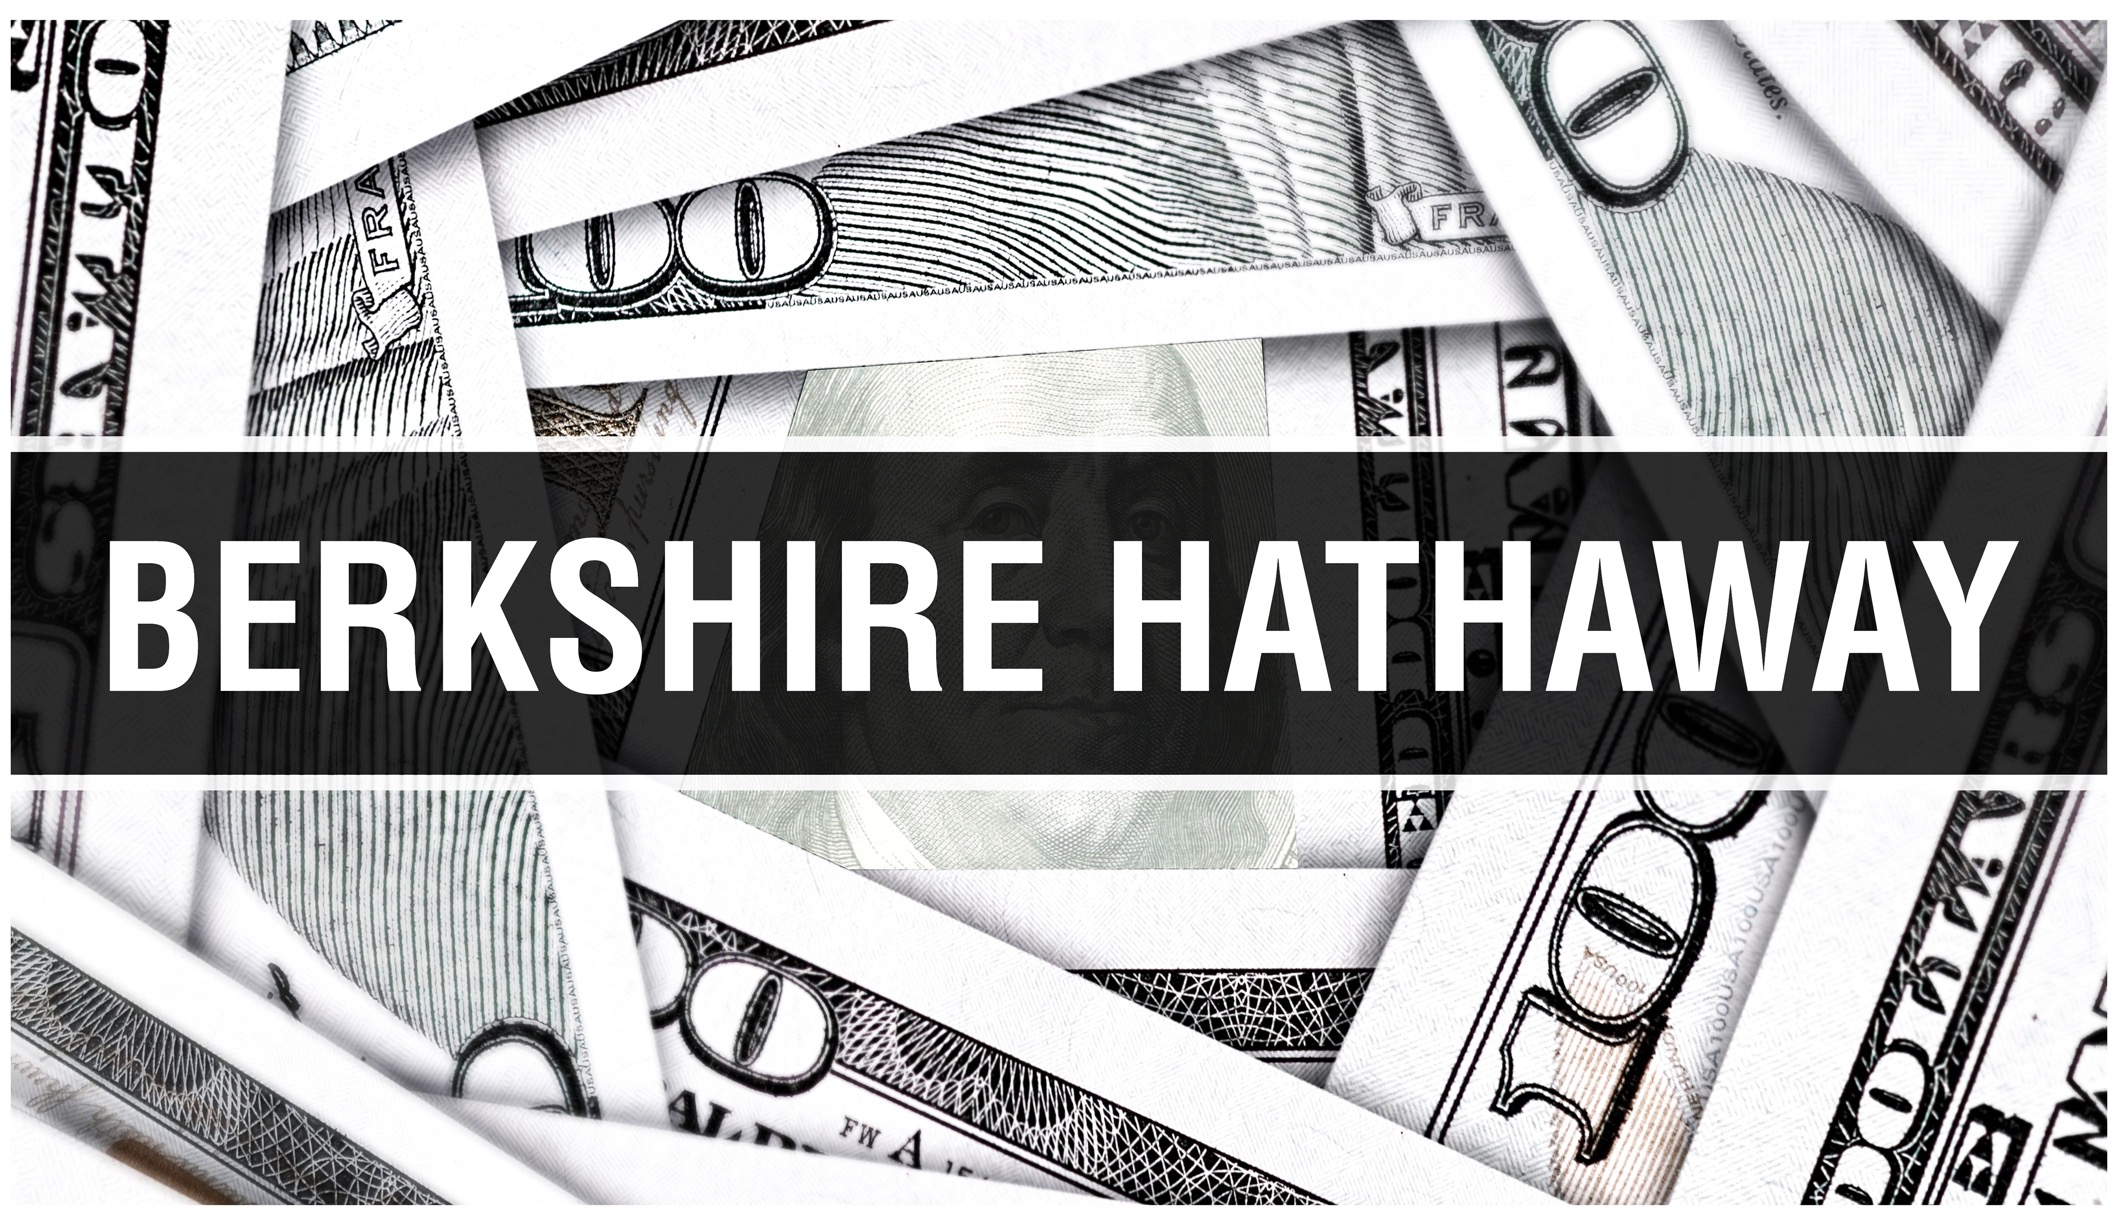 Berkshire Hathawayle kuulub Apple'i aktsiaid 50 miljardi dollari eest